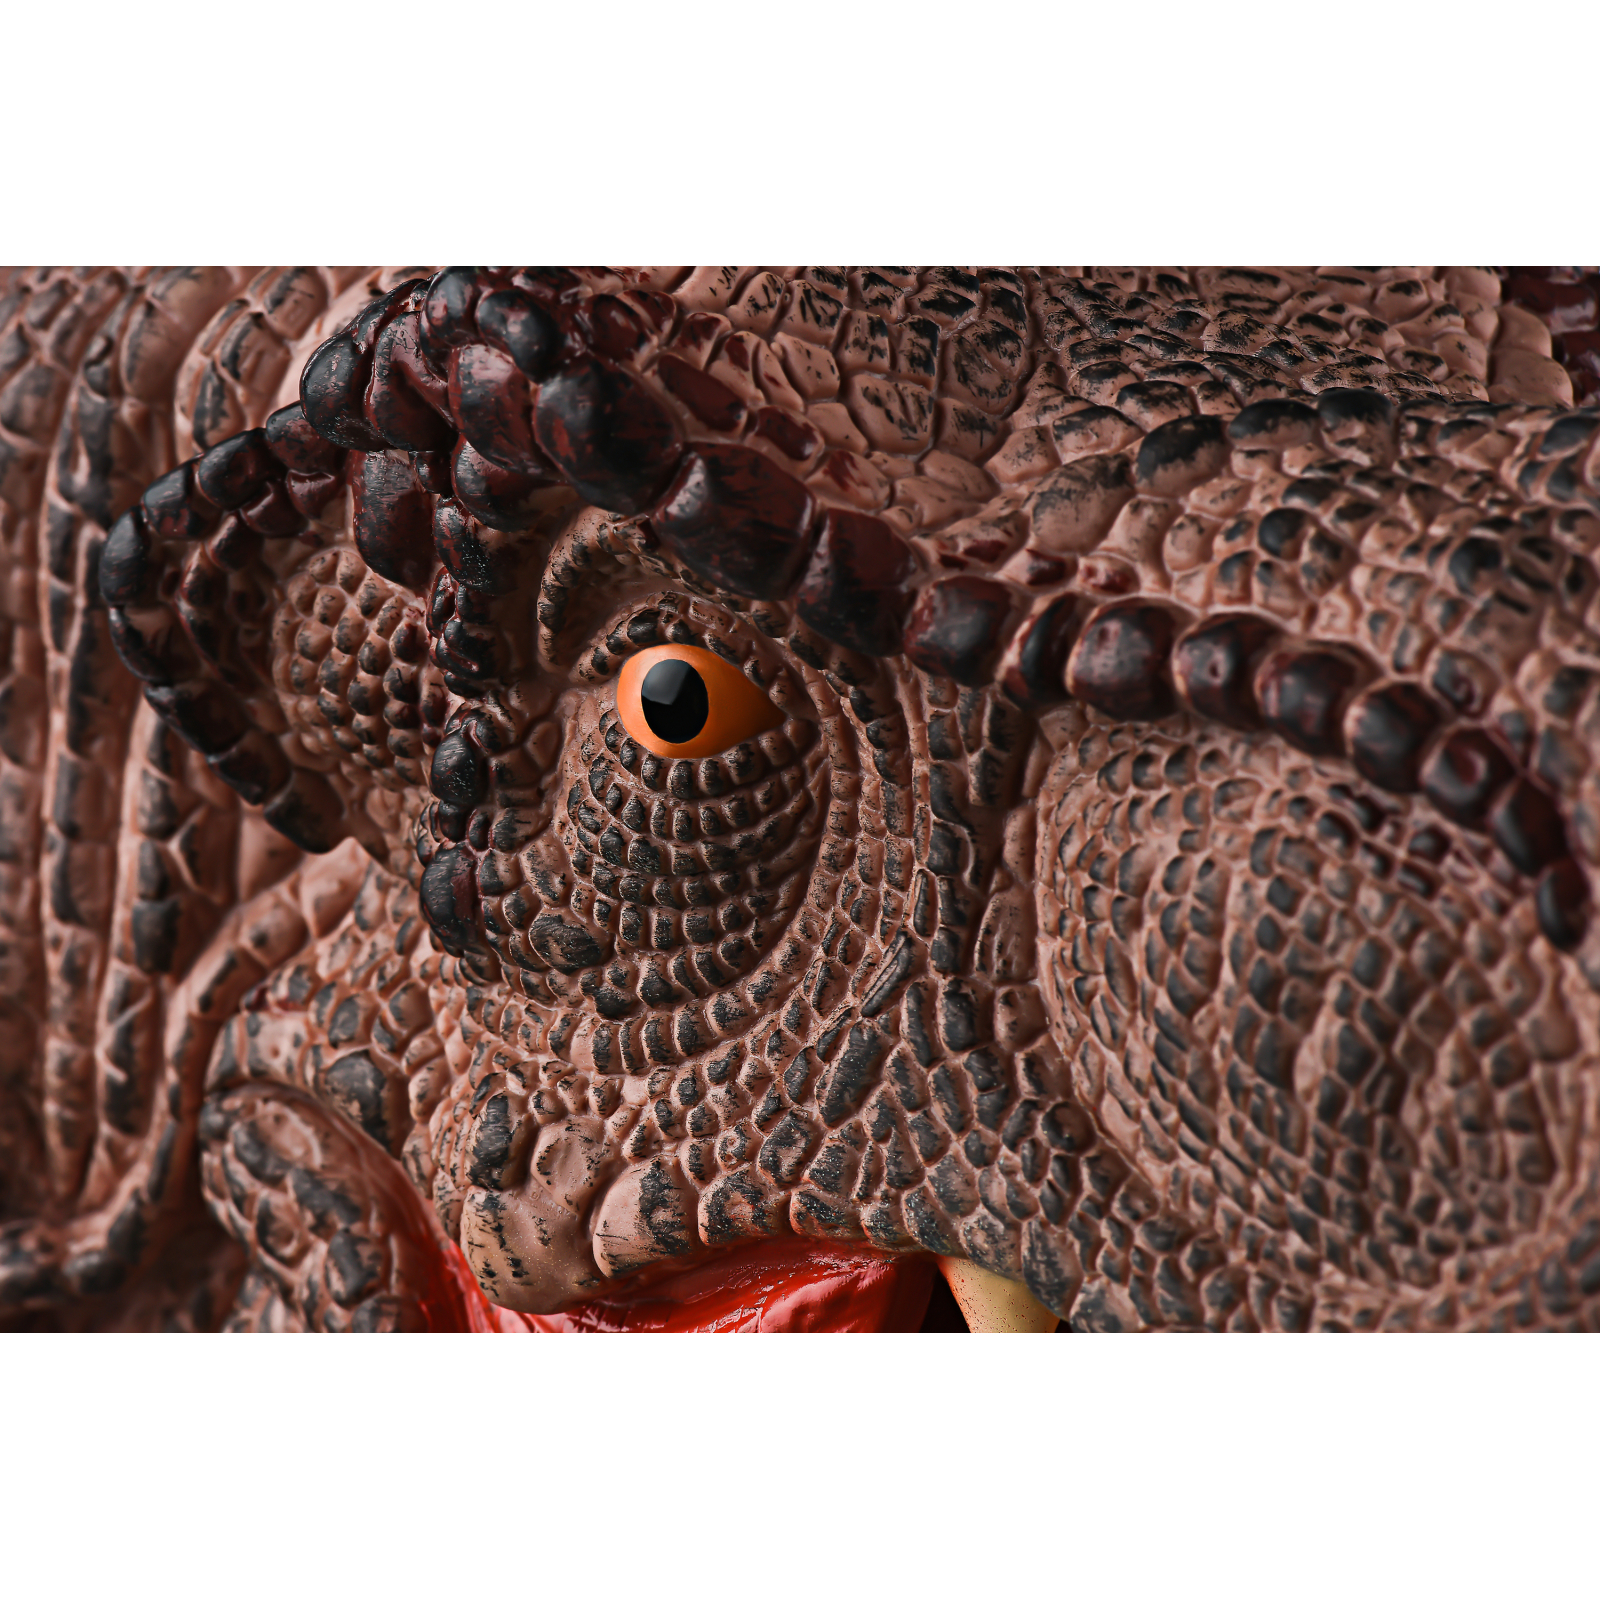 Игровой набор Same Toy рукавичка Тиранозавр (X311UT) изображение 2